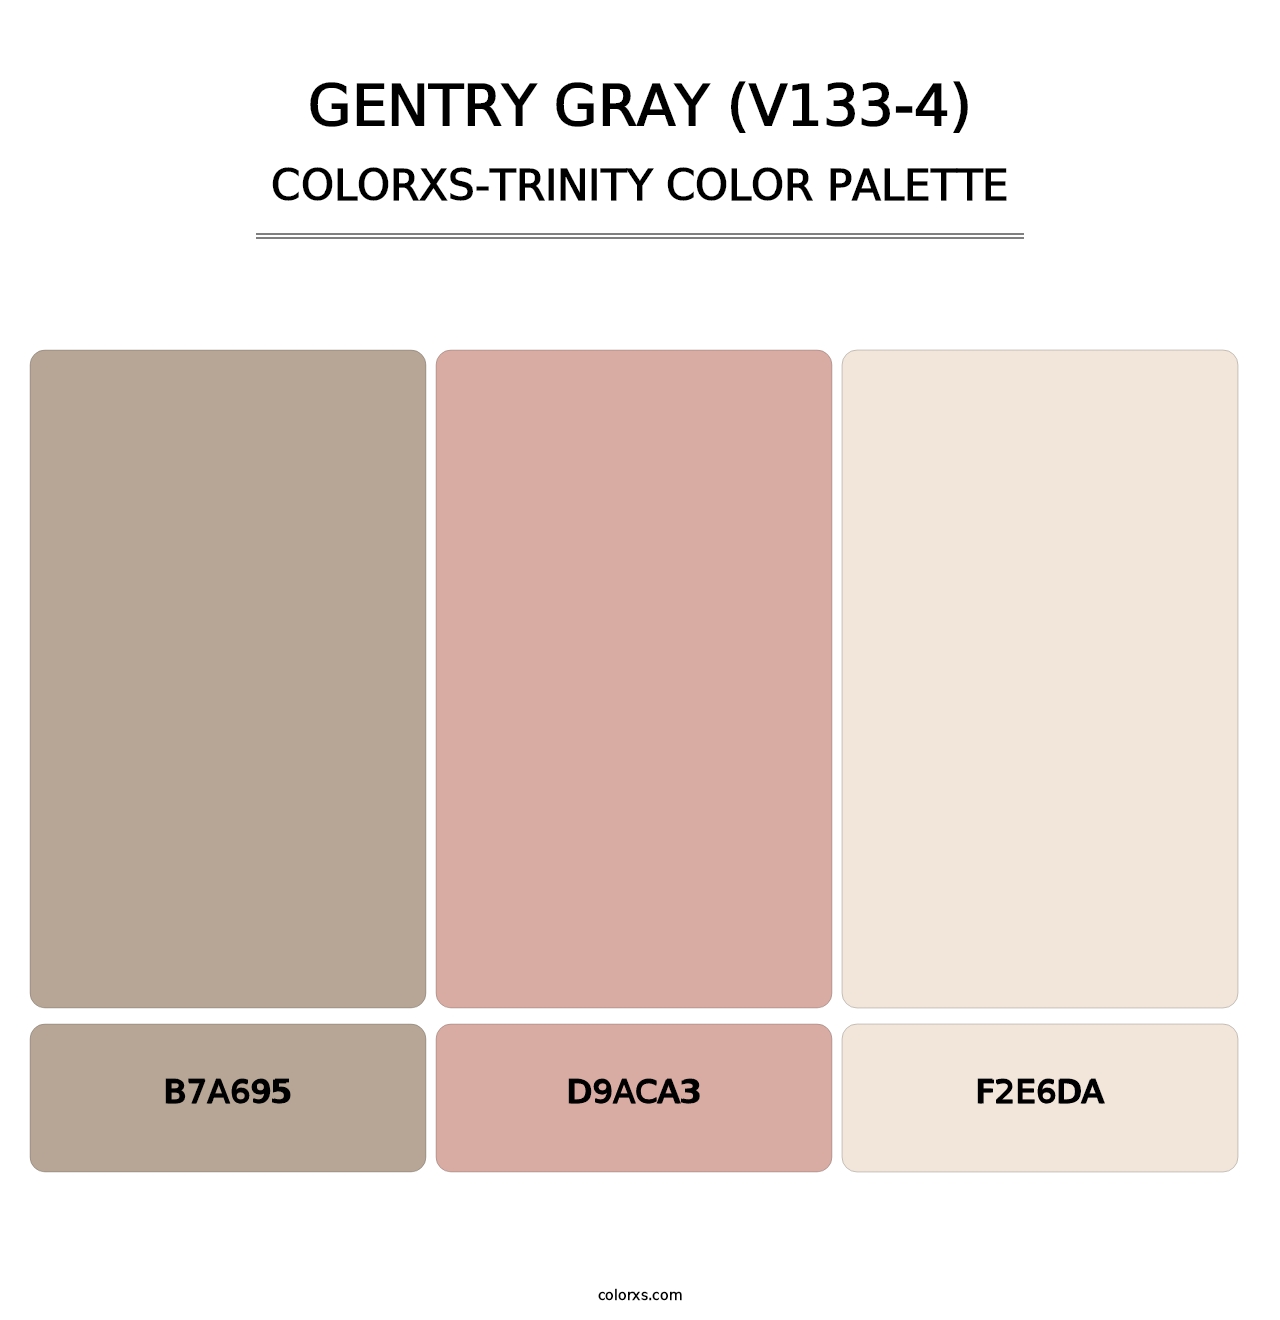 Gentry Gray (V133-4) - Colorxs Trinity Palette